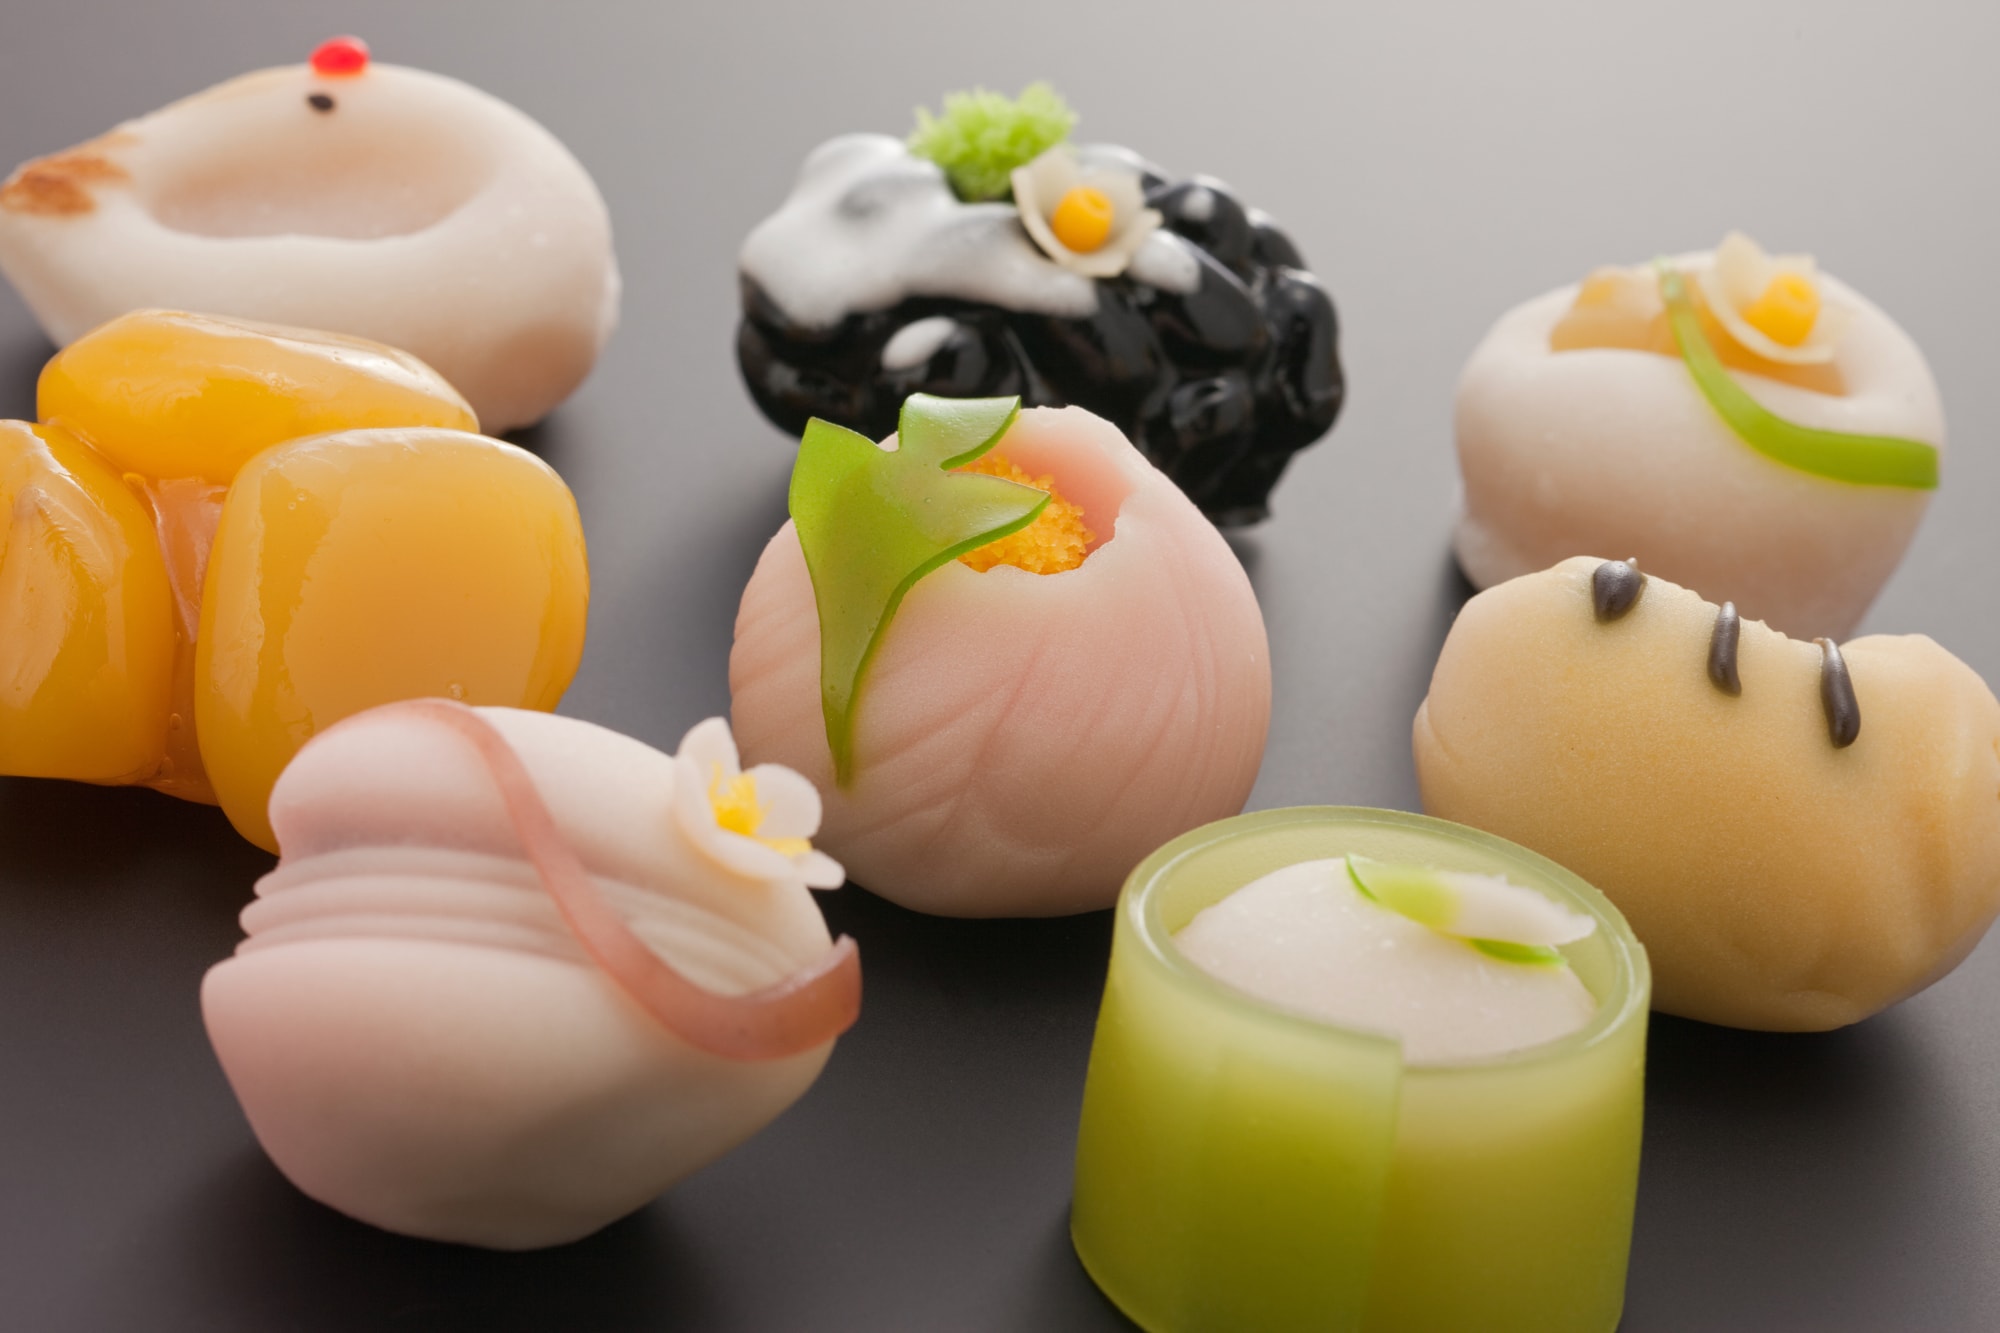 京都で和菓子を自分で作ろう 手作り体験できるおすすめ名店5選 Pokke Magazine